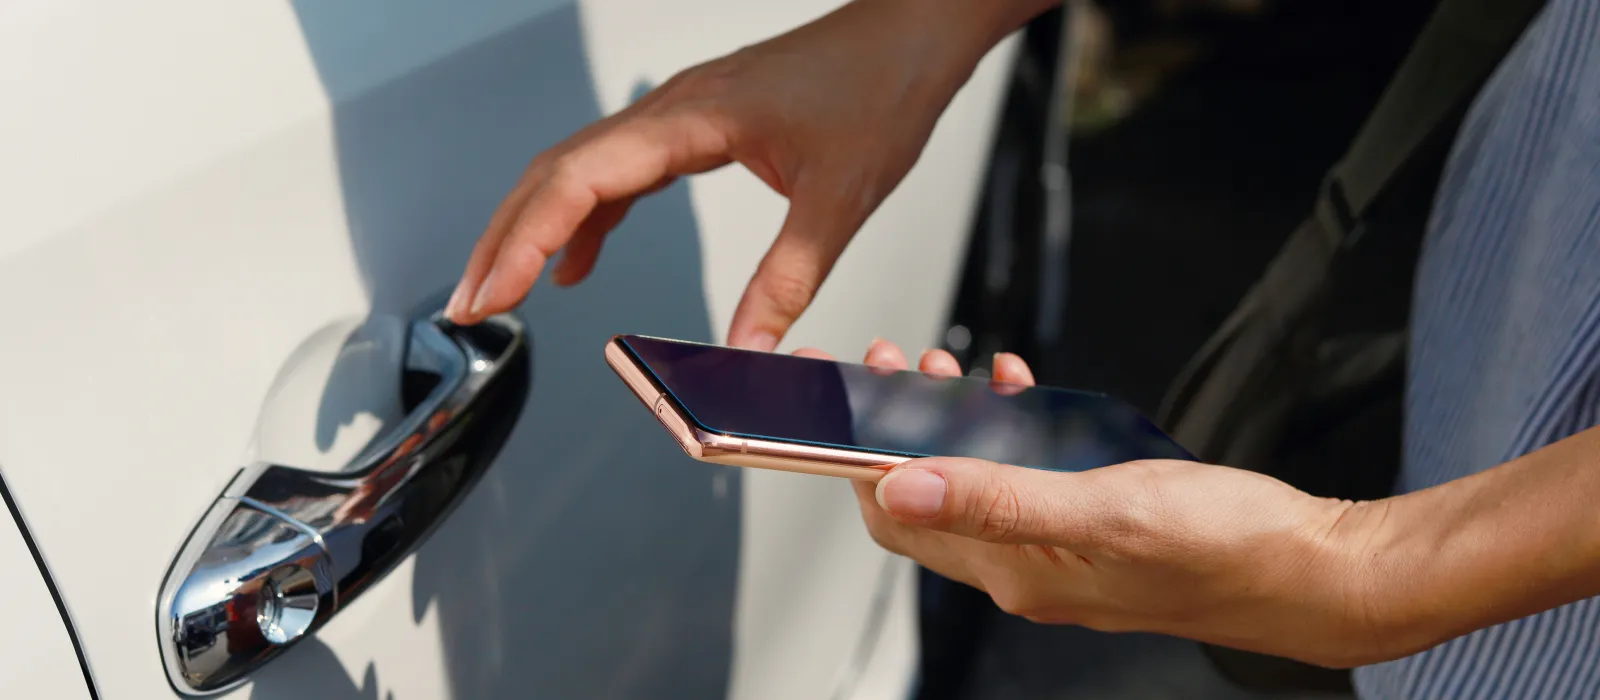 Frau mit Smartphone öffnet eine Autotür mit NFC-Technologie